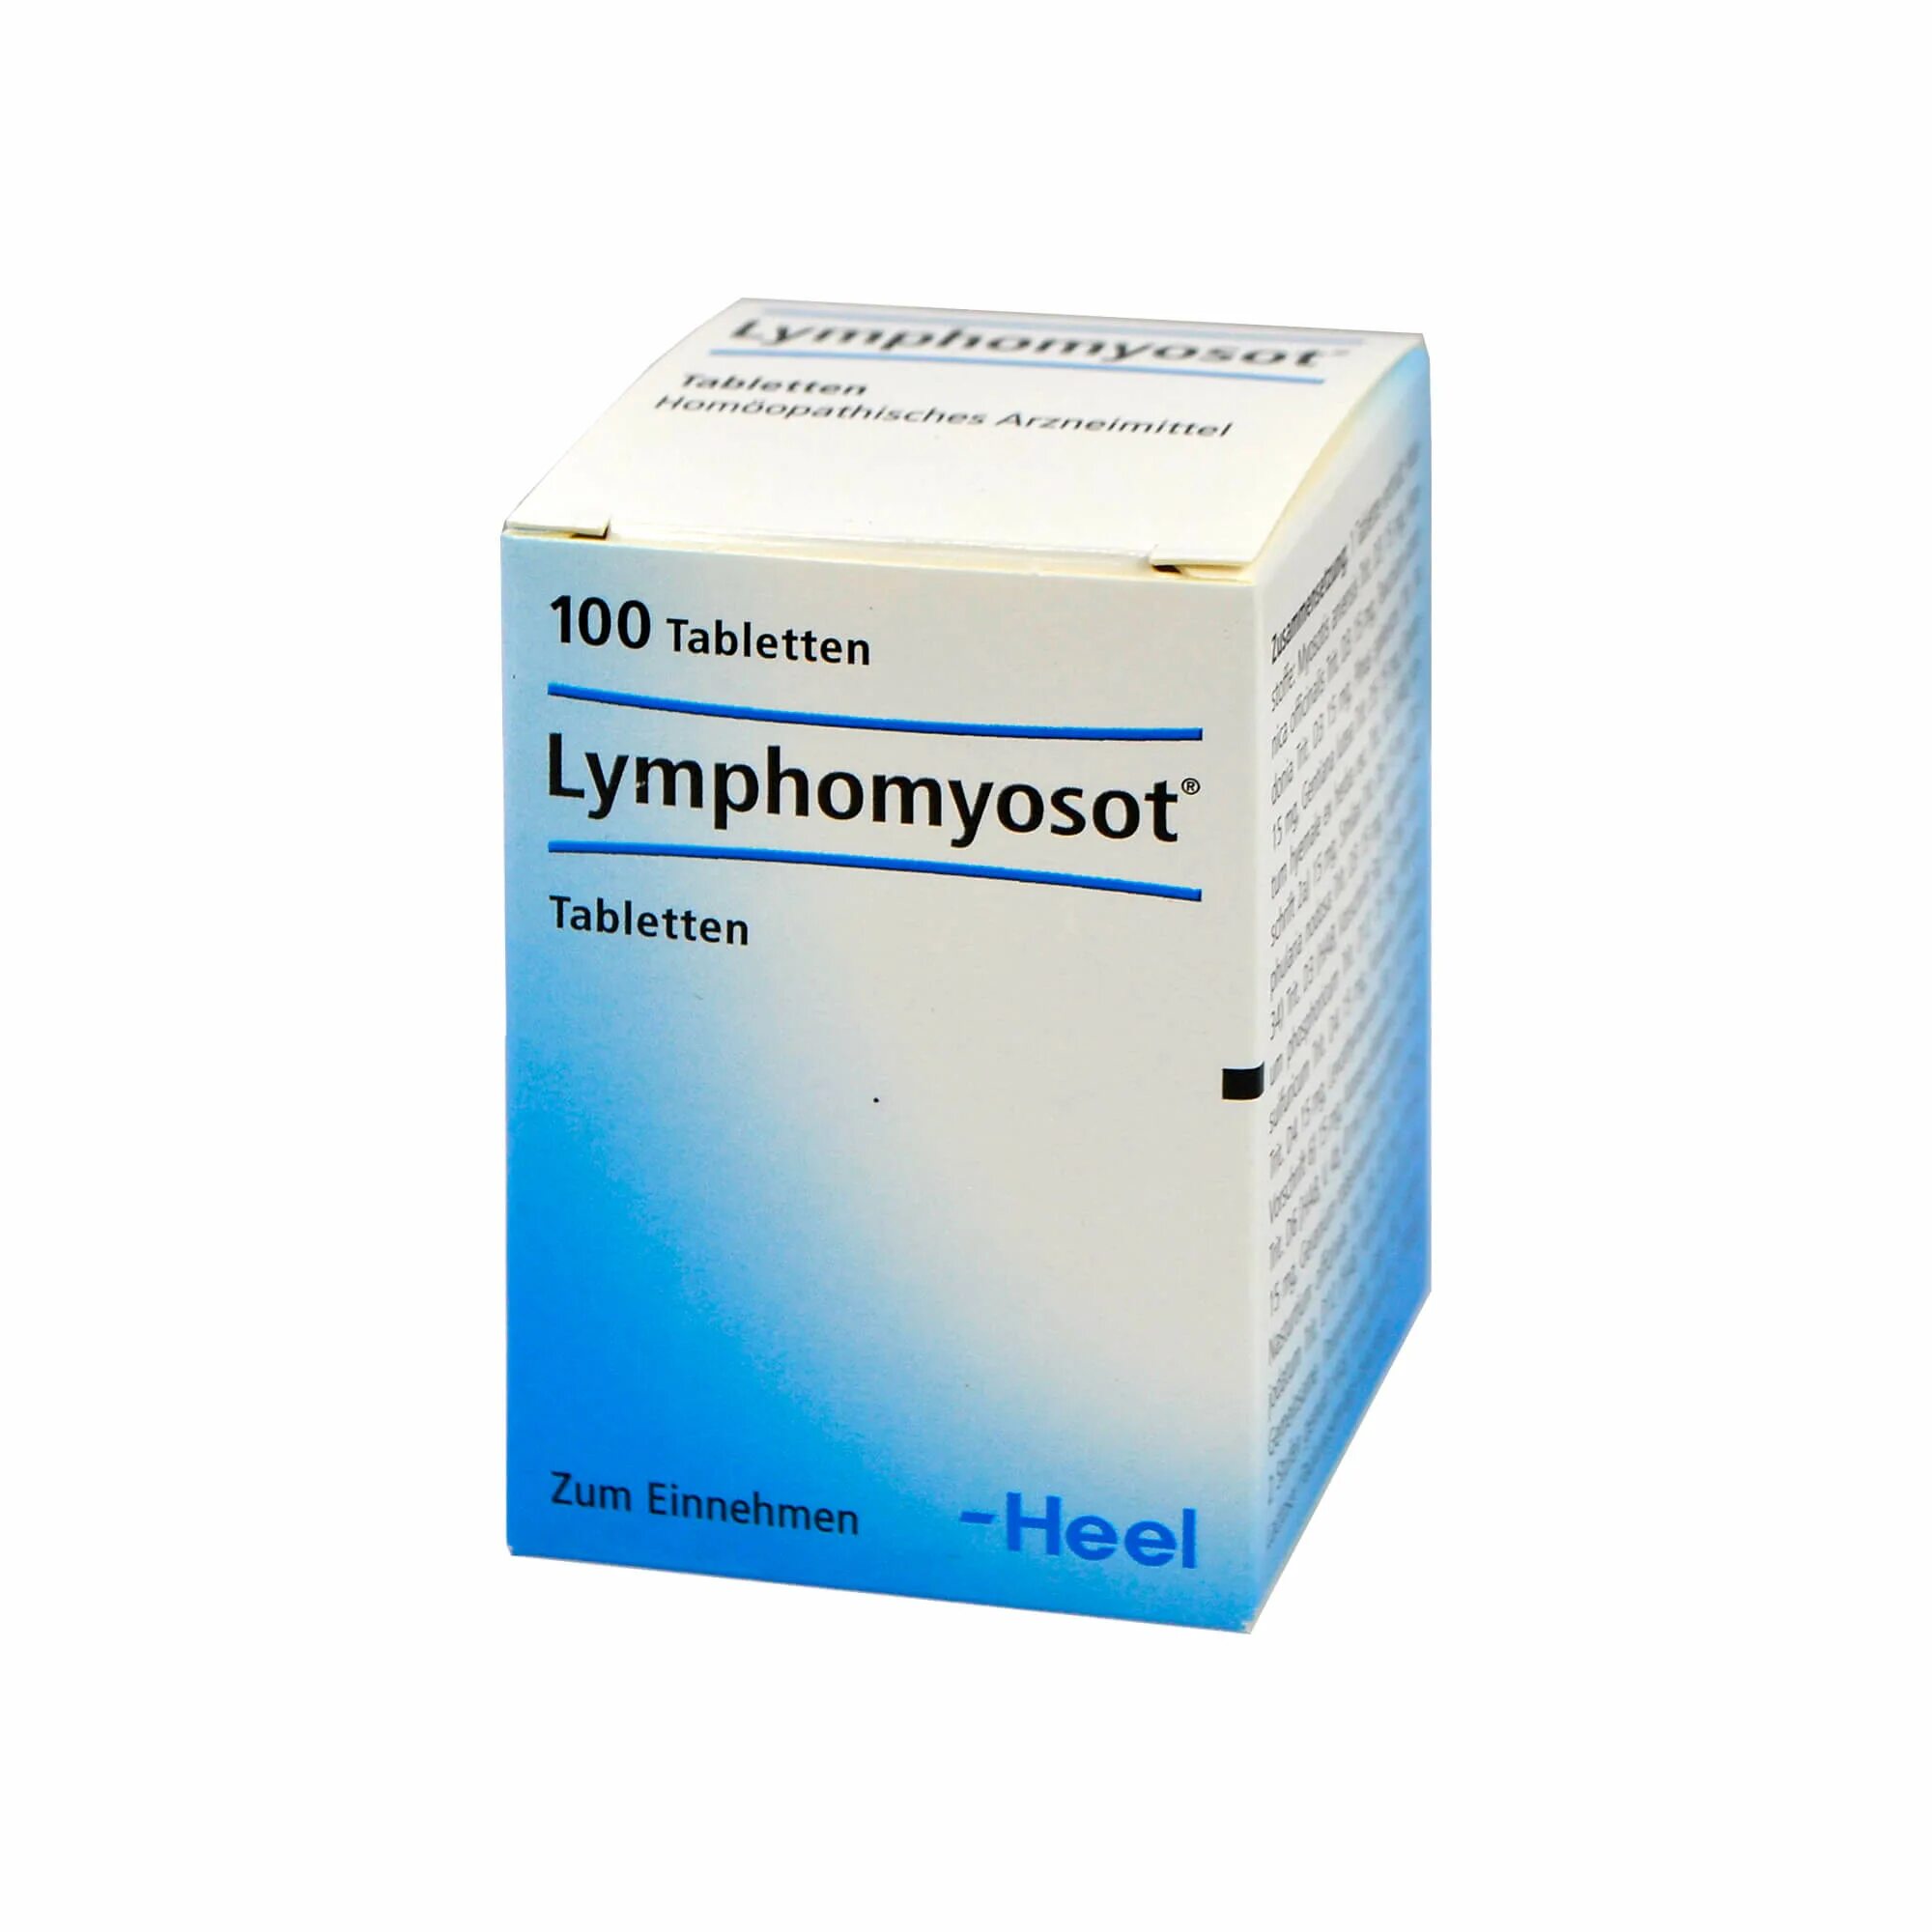 Lymphomyosot таблетки. Лимфомиозот турецкий аналог. Лимфомиозот. Препараты для лимфы. Лимфомиозот купить в москве